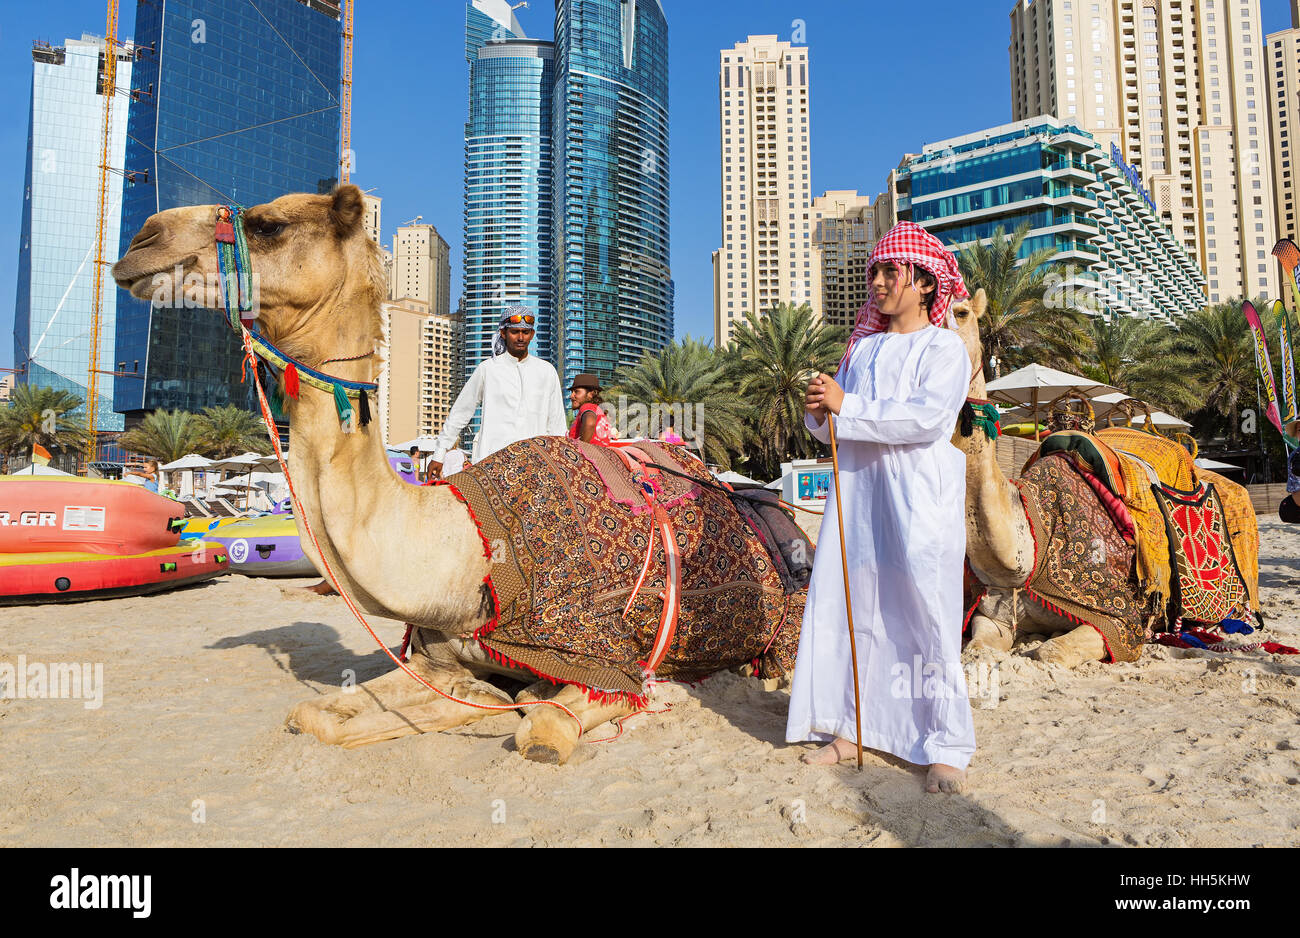 La marina de Dubaï, EMIRATS ARABES UNIS - Mars 10, 2016 : Marina de Dubaï gratte-ciel et de chameaux sur la plage de Dubaï, Emirats Arabes Unis Banque D'Images